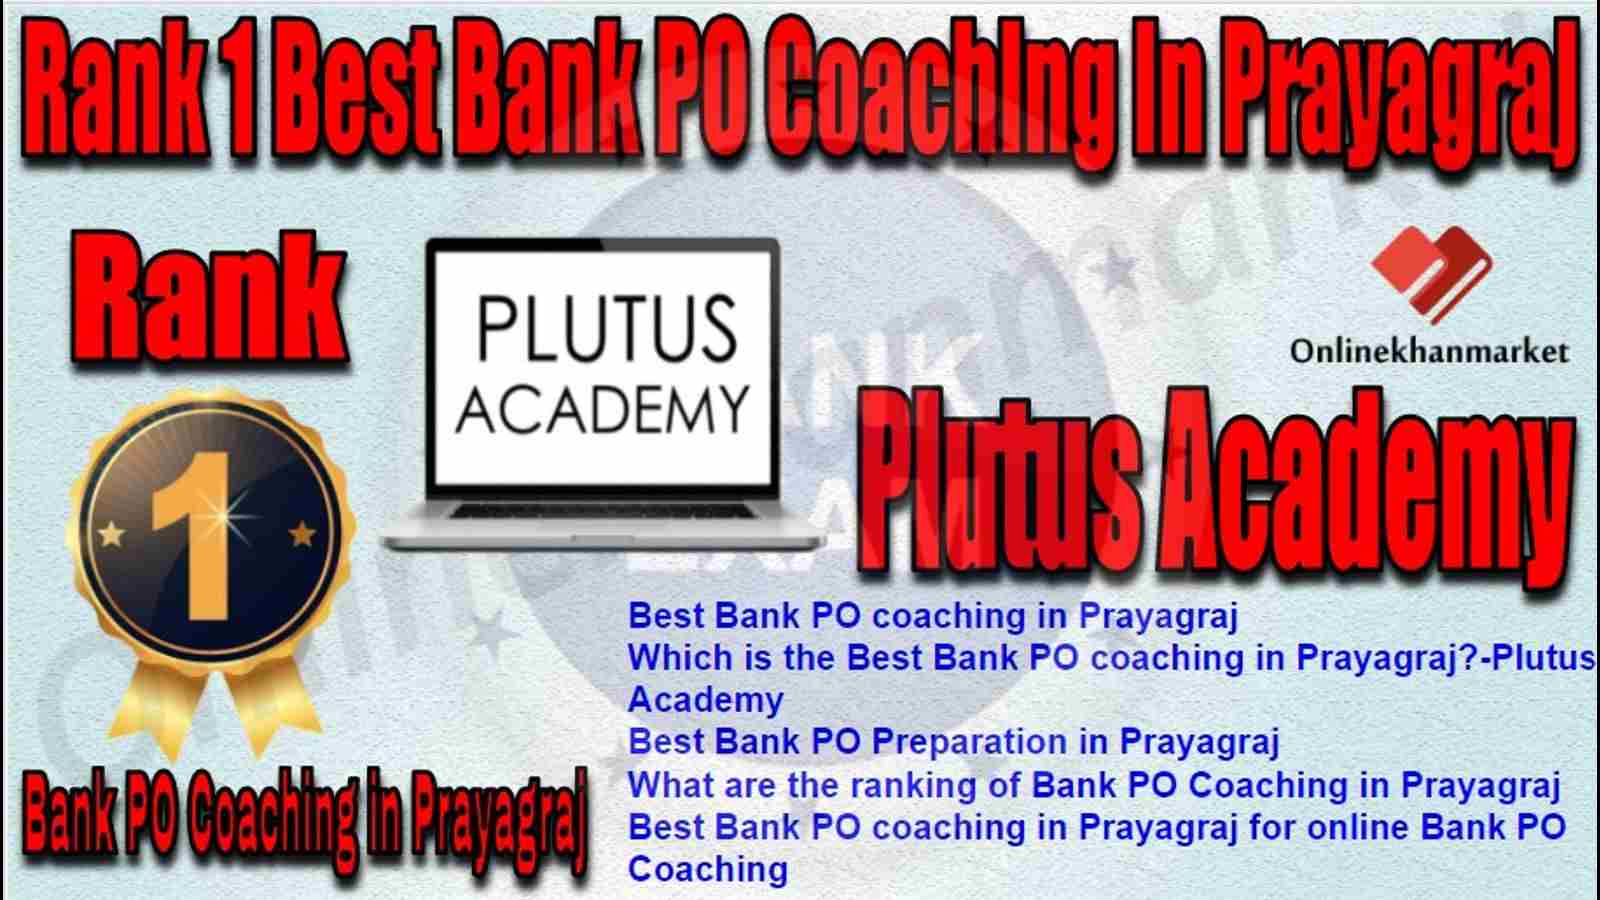 Rank 1 TOP Bank PO Coaching in prayagraj